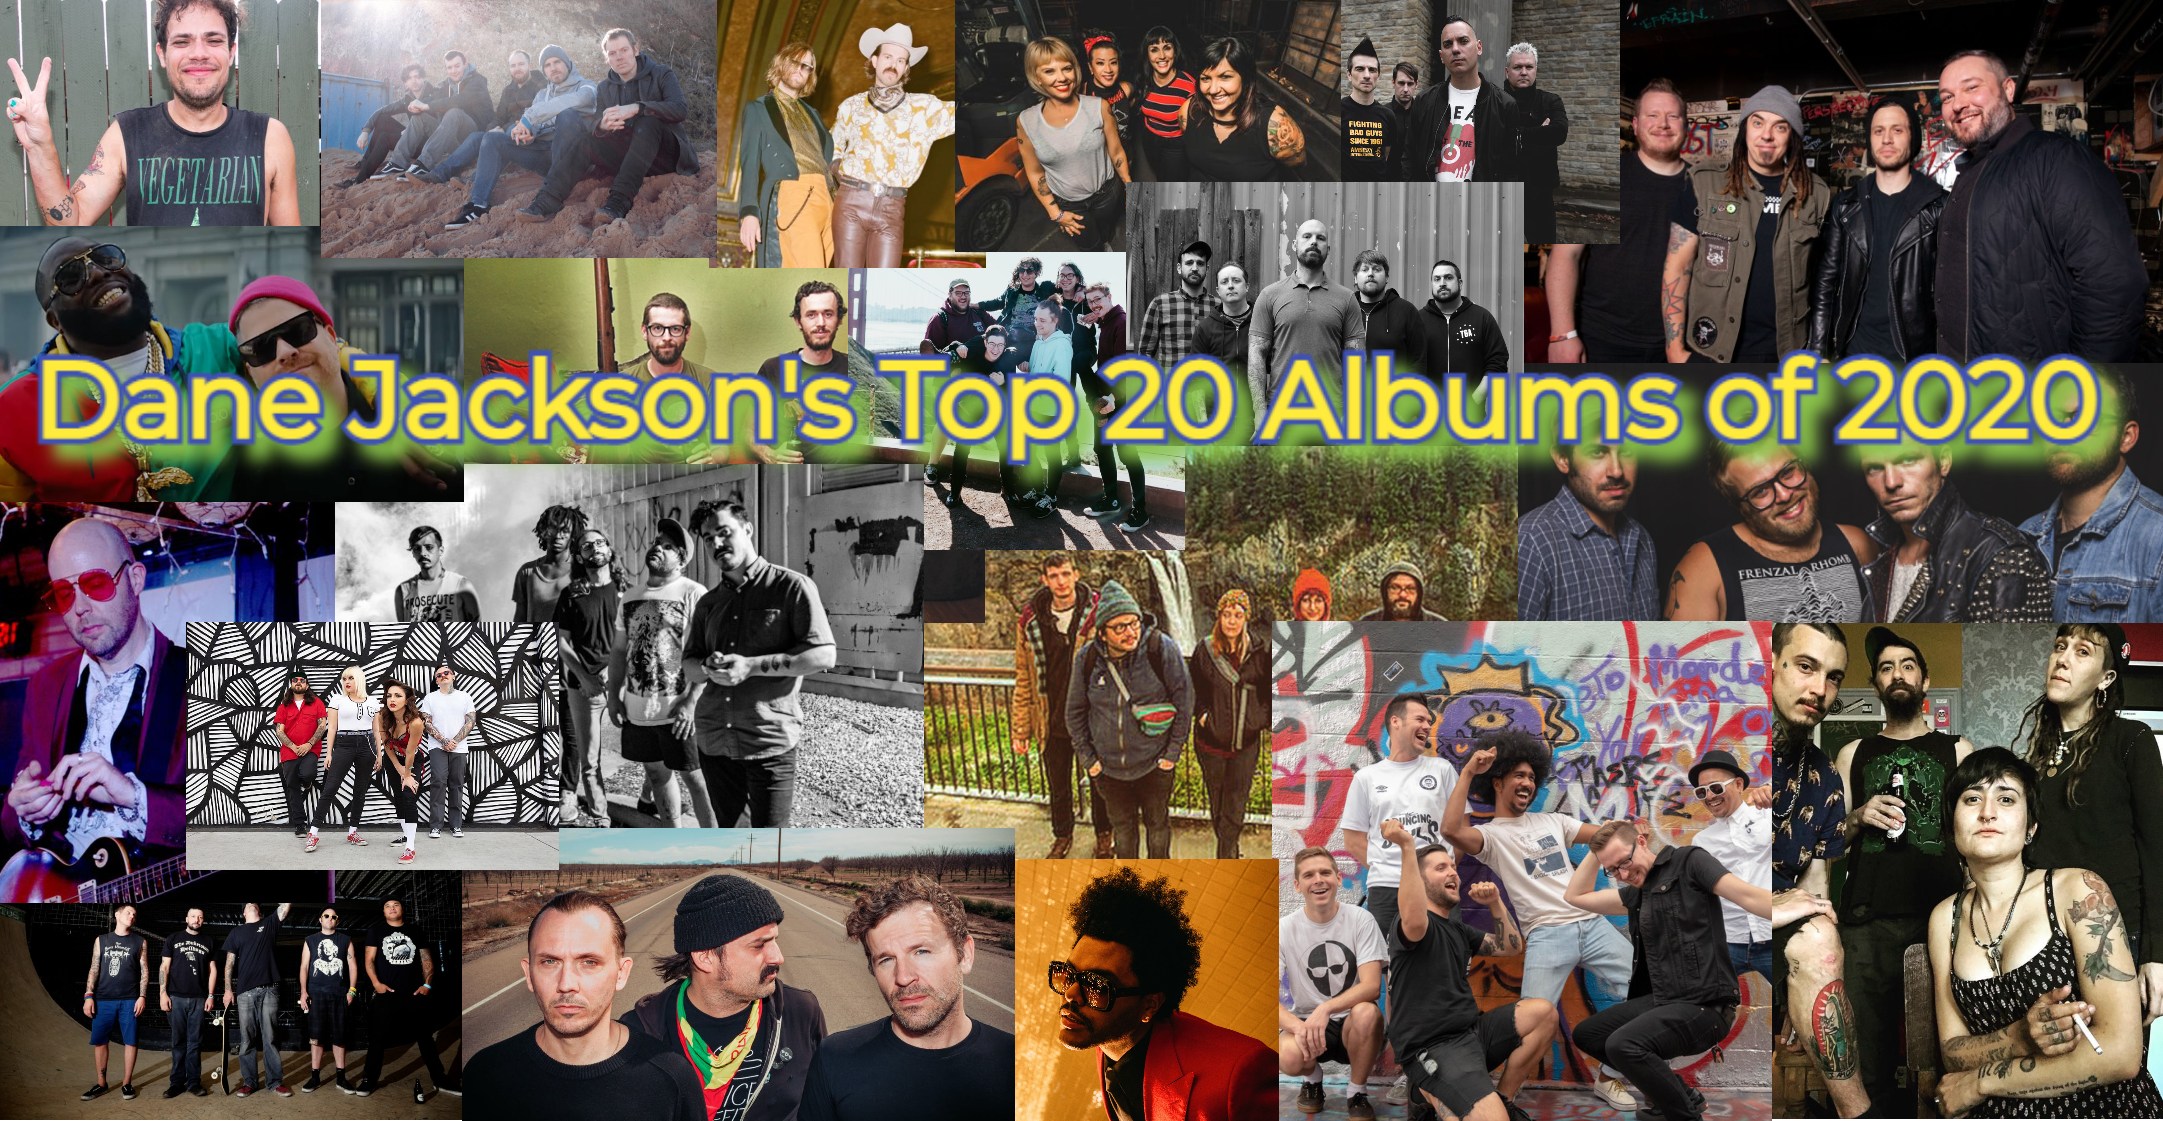 Dane Jackson's Top 20 Albums - Band Photos